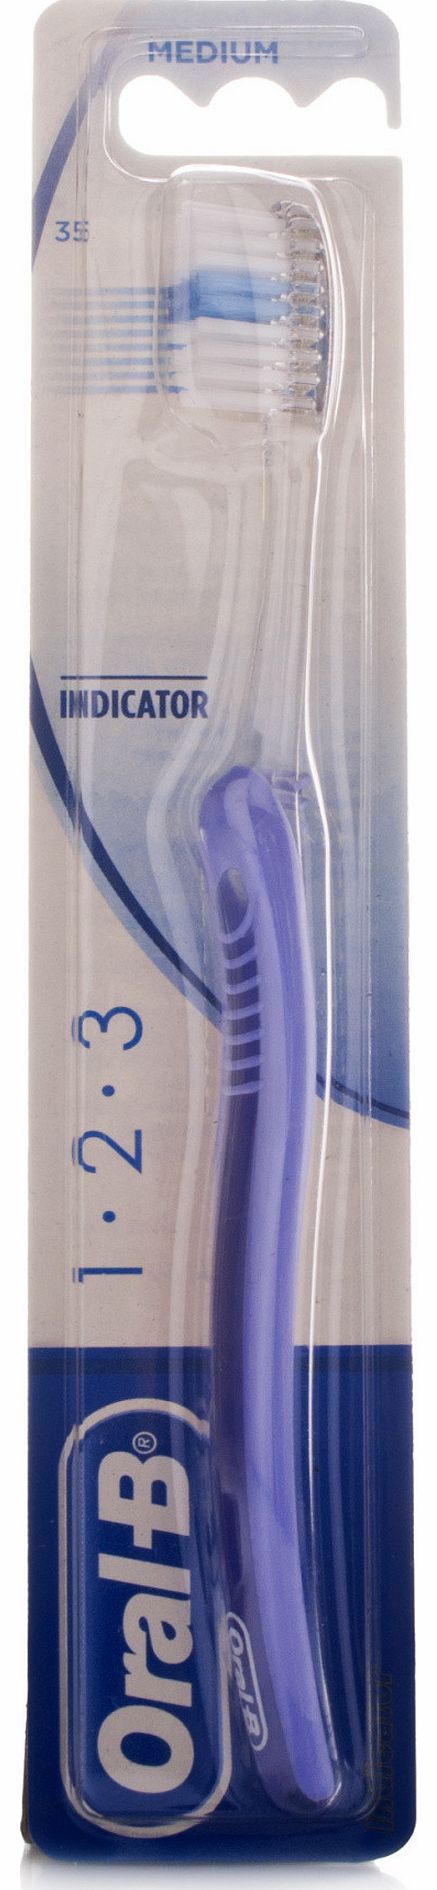 Oral-B IndicatorToothbrush 35